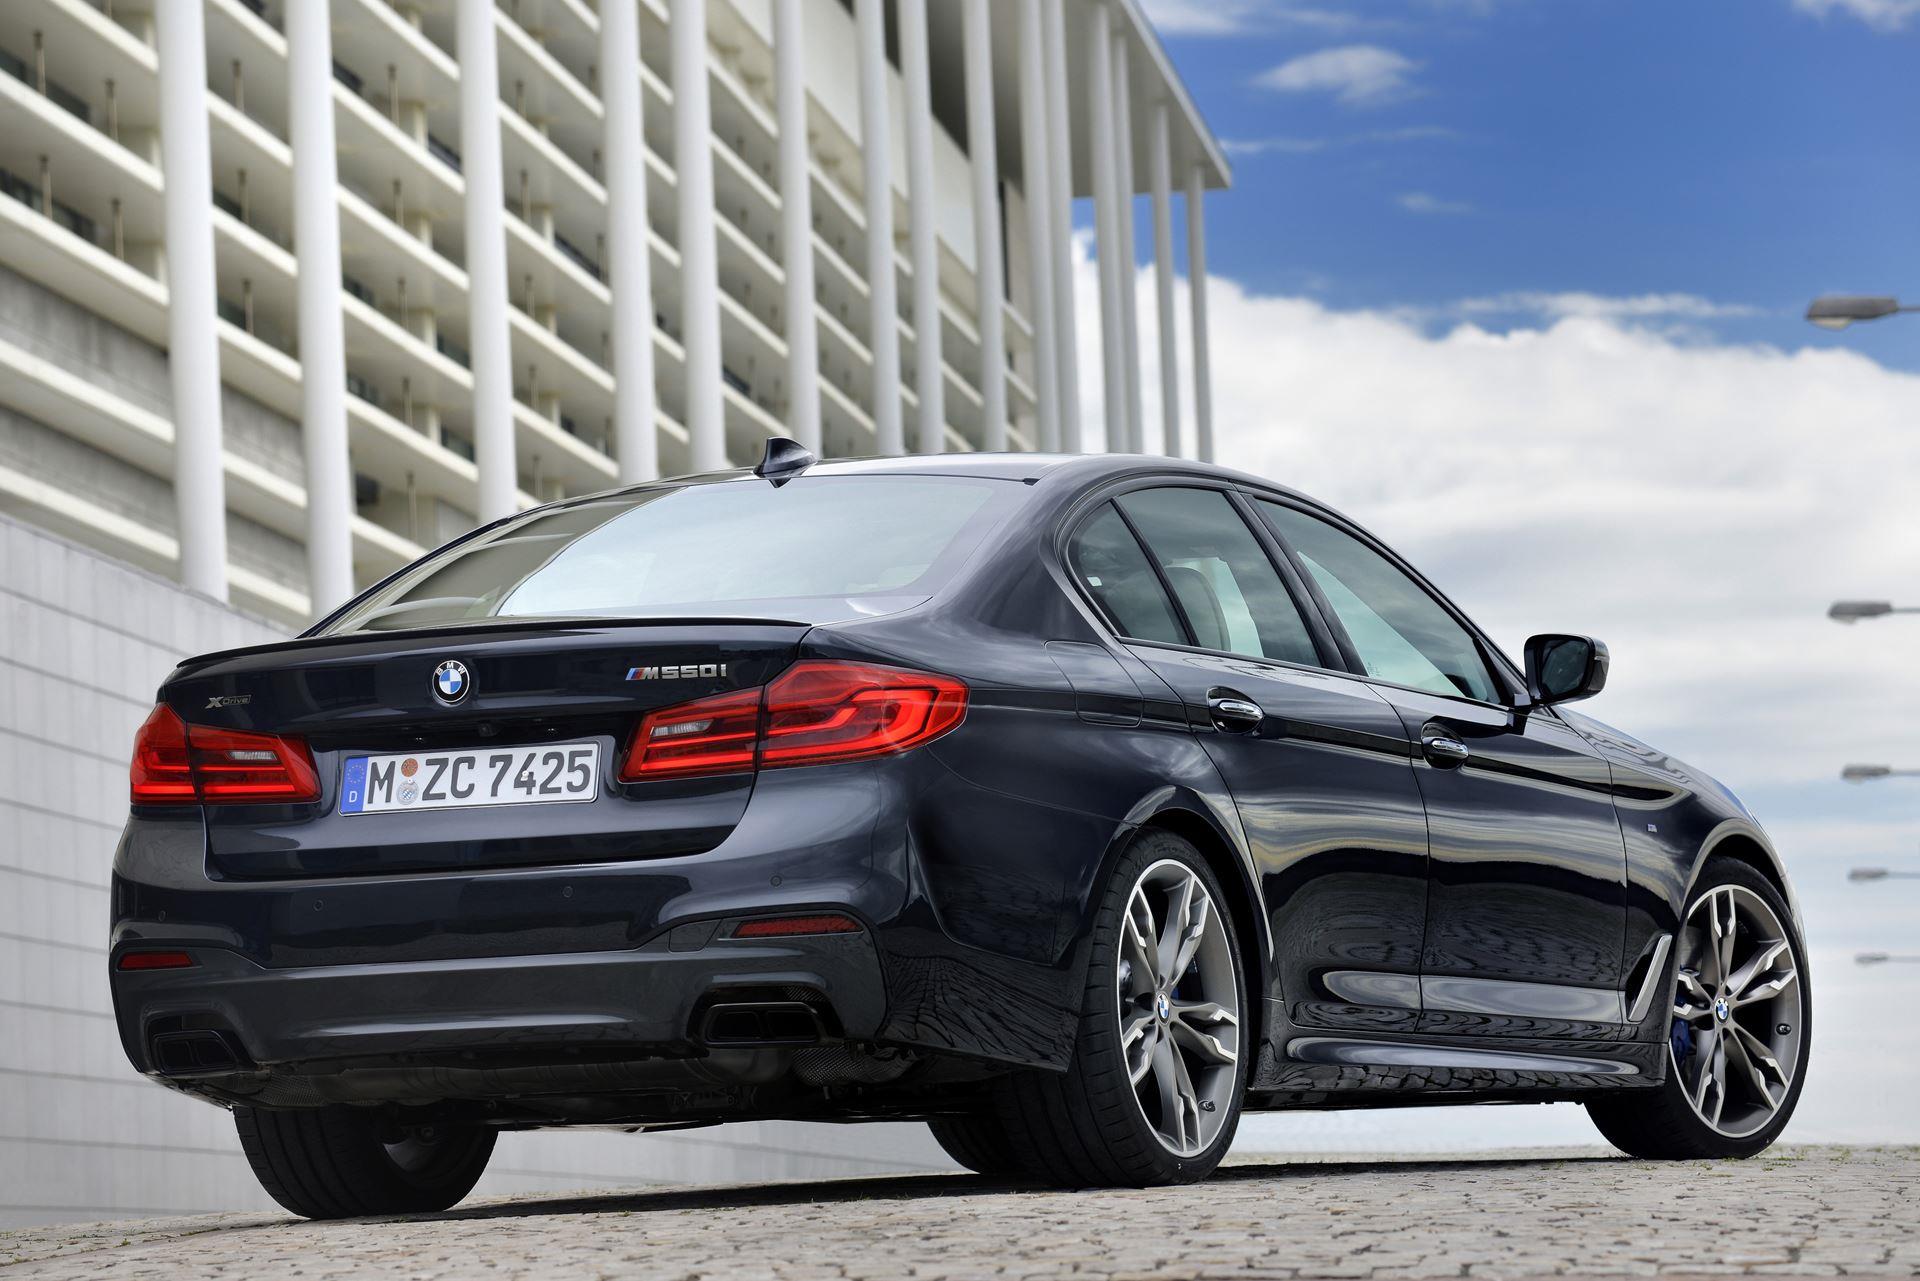 قیمت روز BMW در بازار / افزایش ۳ میلیارد تومانی این مدل در یک هفته + جدول